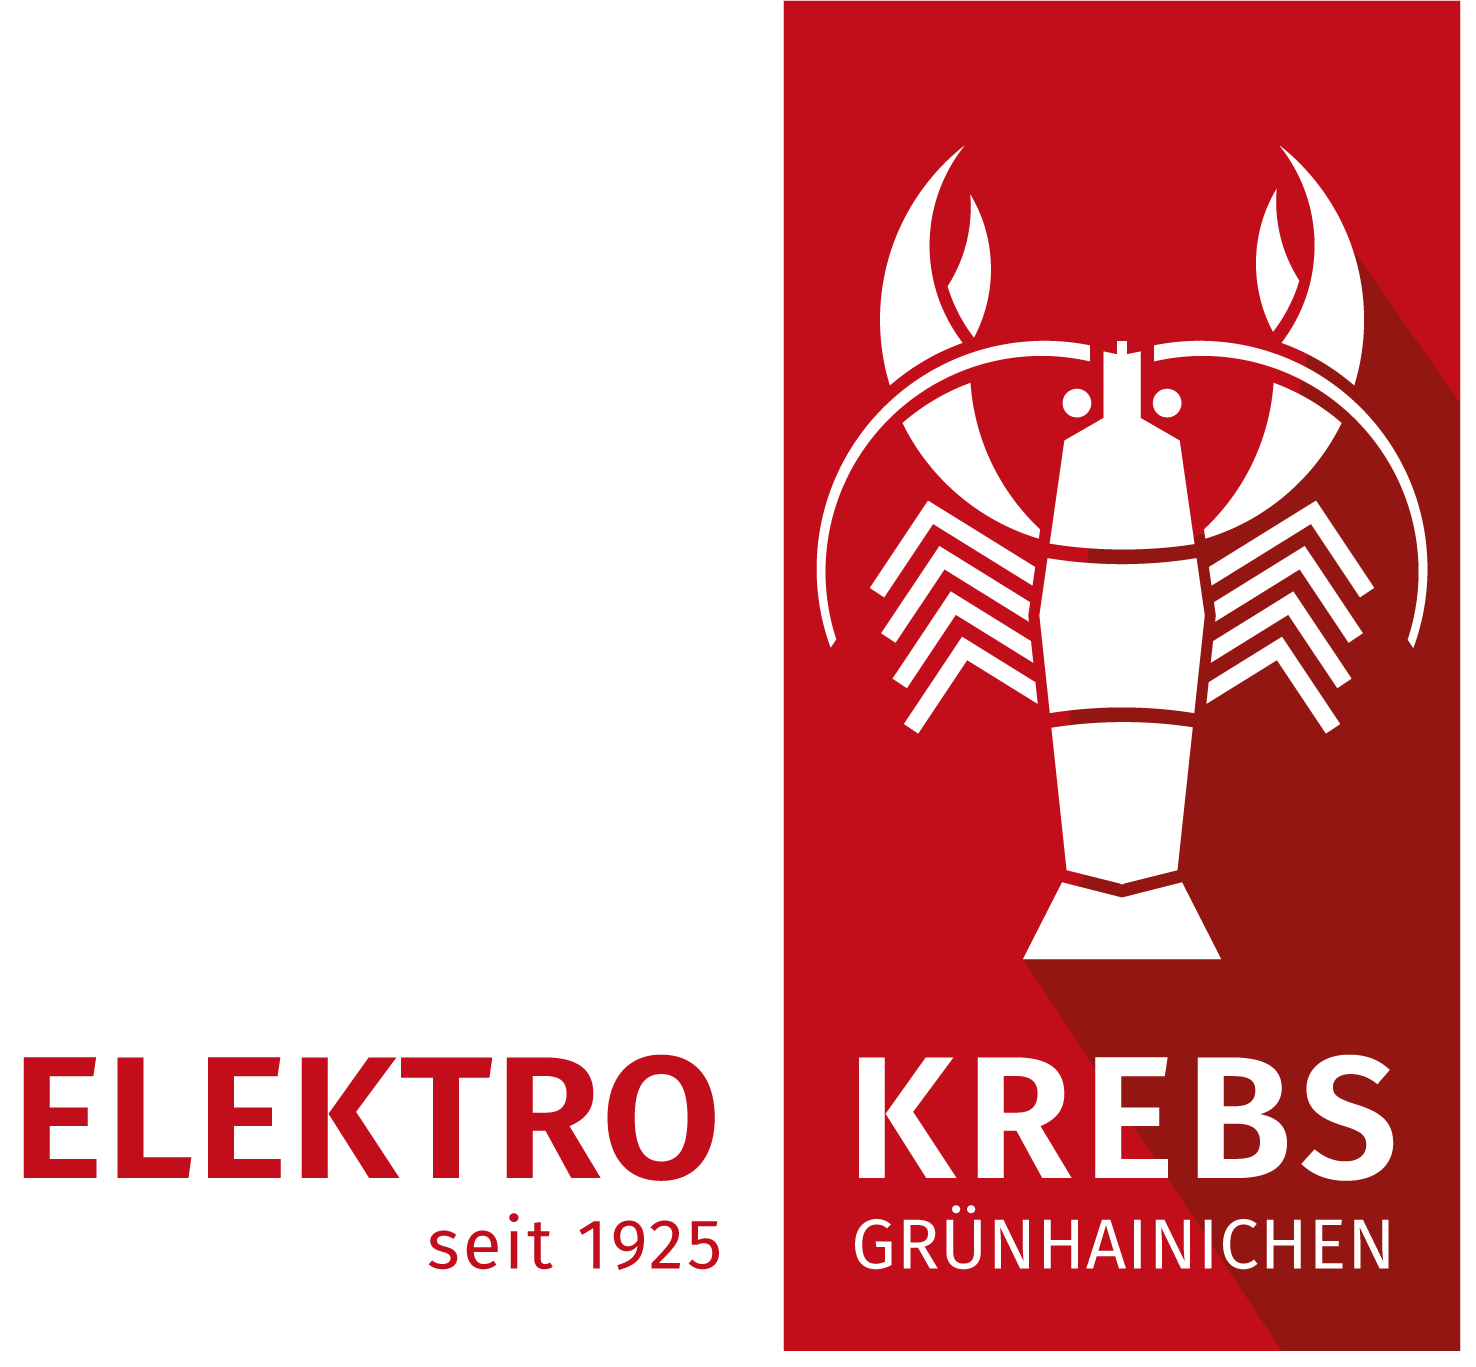 Elektro Krebs, Grünhainichen